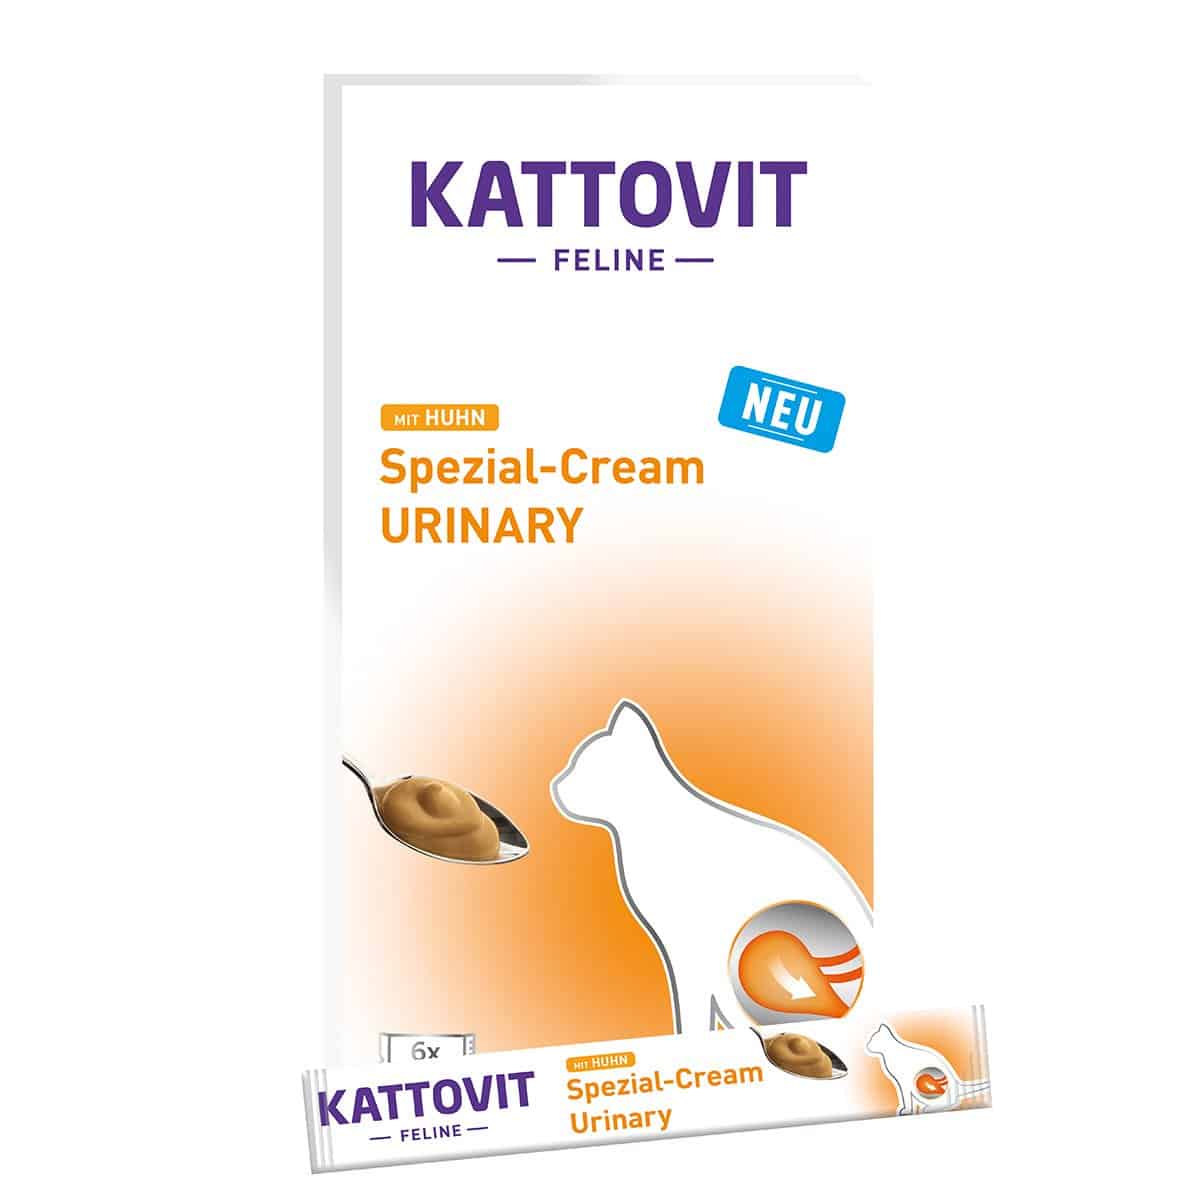 Kattovit Spezial-Cream Urinary mit Huhn 6x15g